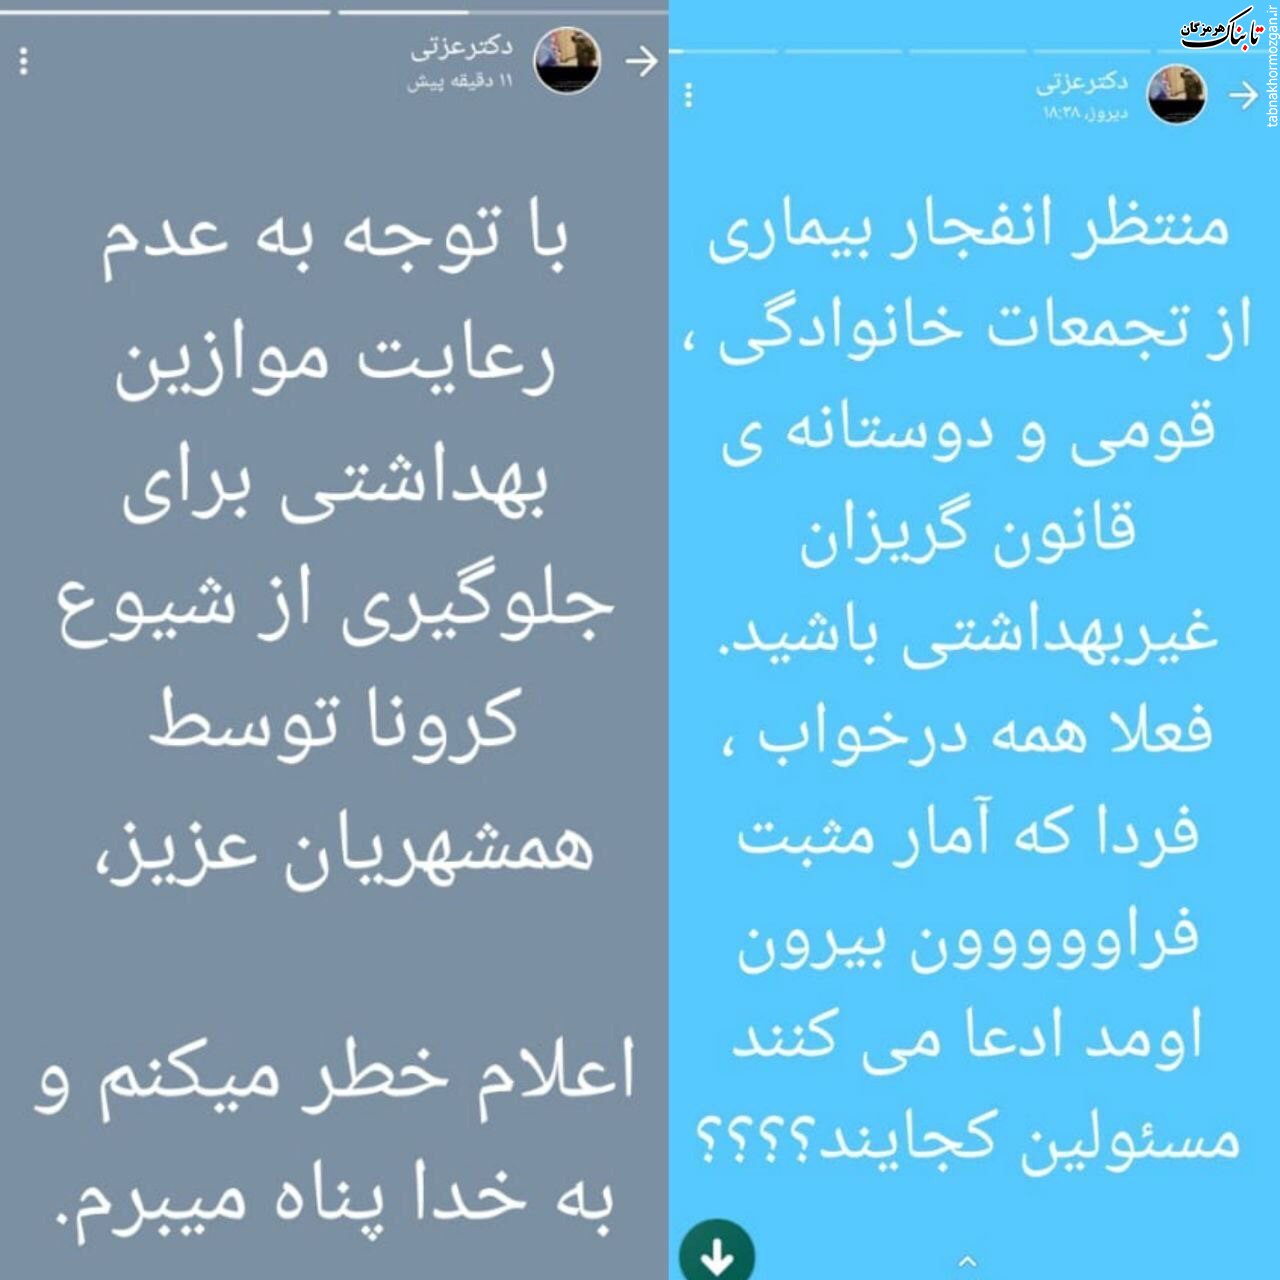 رییس شبکه بهداشت رامهرمز نسبت به انفجار کرونا در خوزستان هشدار داد